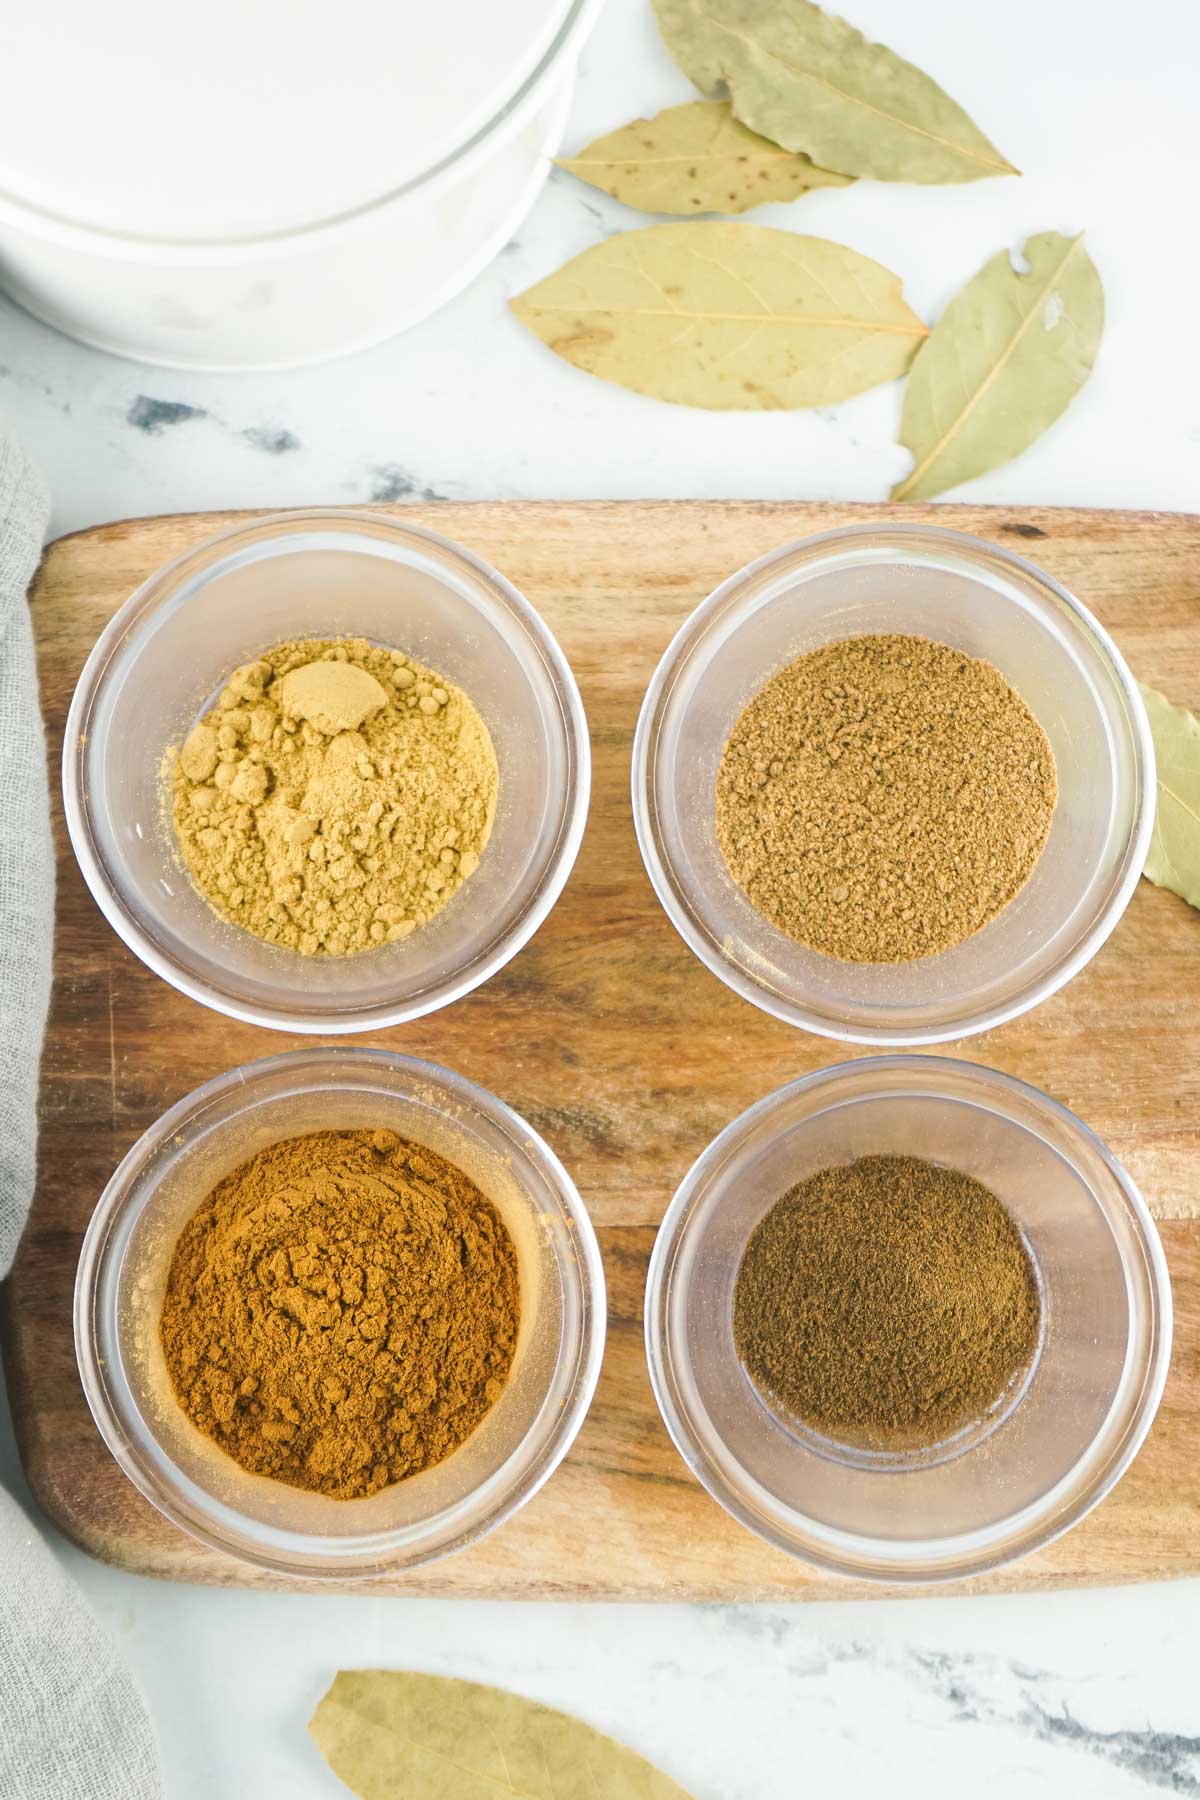 Ingredients for Pumpkin Pie Spice Recipe includes ground cinnamon, ground ginger, ground nutmeg and ground allspice.